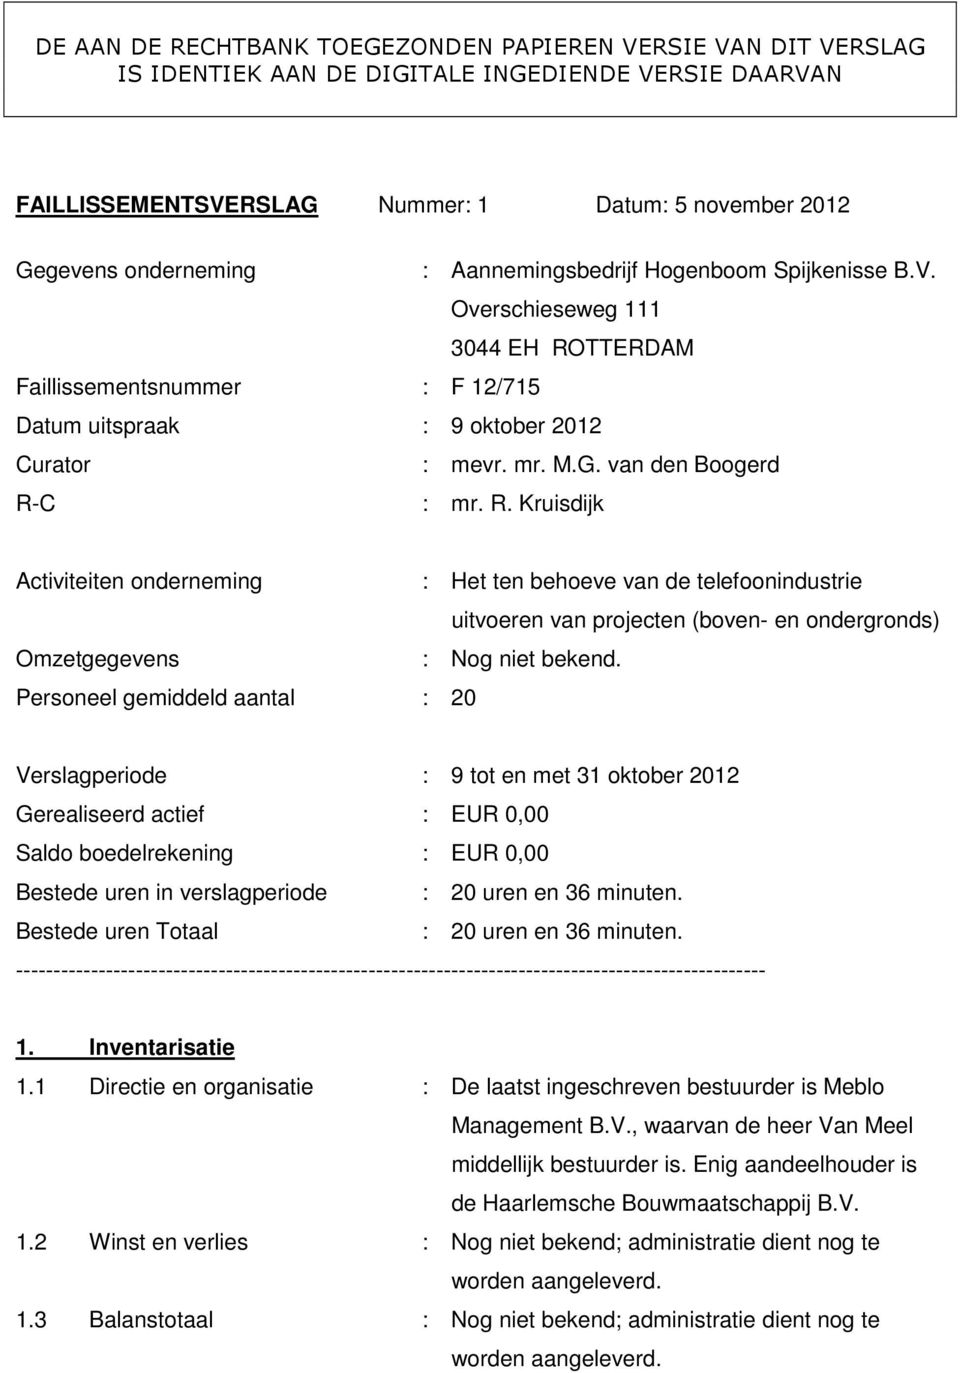 TTERDAM Faillissementsnummer : F 12/715 Datum uitspraak : 9 oktober 2012 Curator : mevr. mr. M.G. van den Boogerd R-